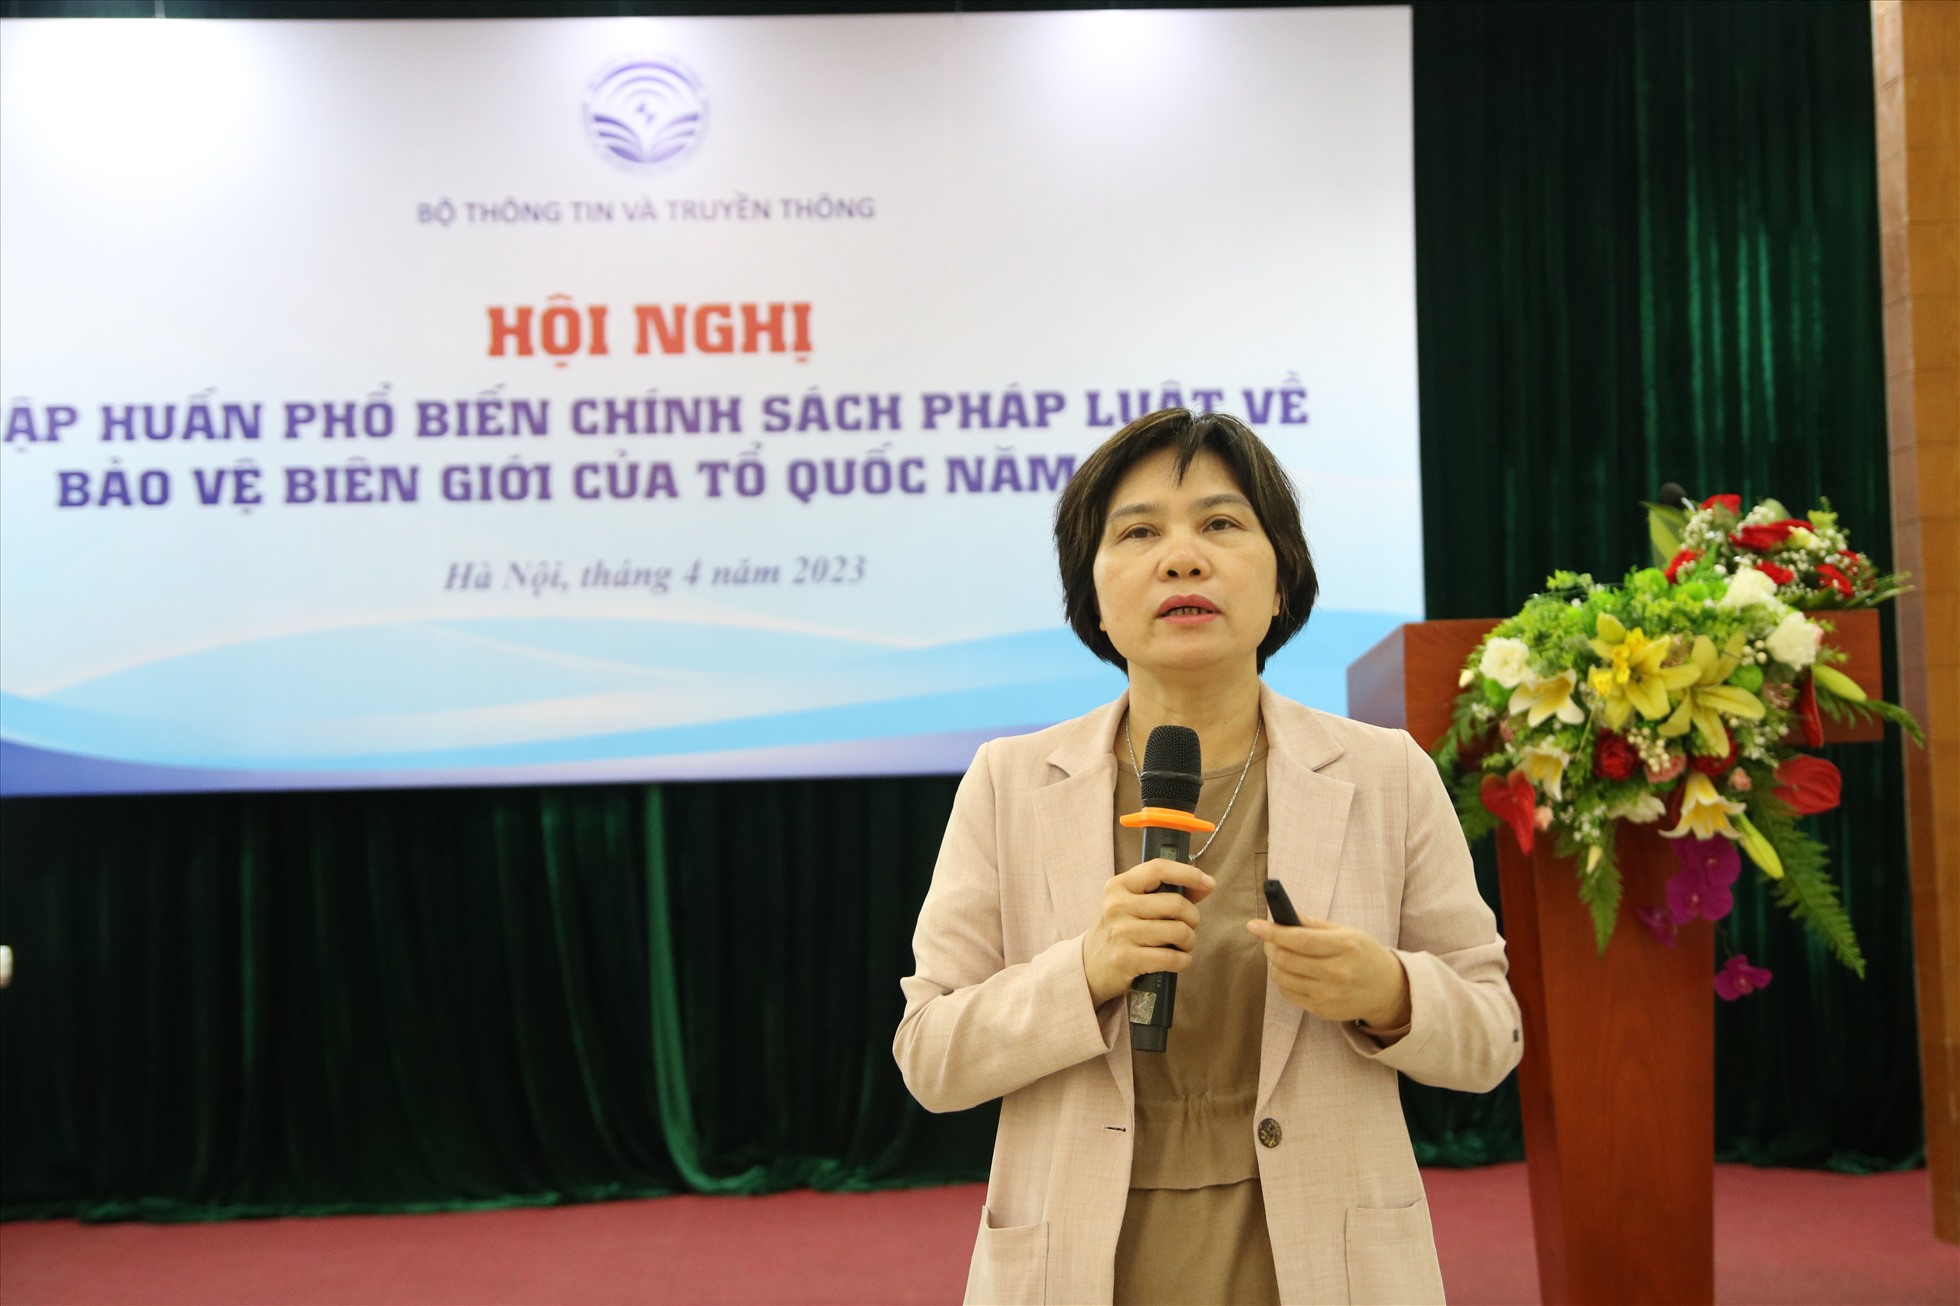 PGS.TS.Đỗ Thị Thu Hằng - Trưởng ban Nghiệp vụ, Hội Nhà báo Việt Nam. Ảnh: Trần Vương